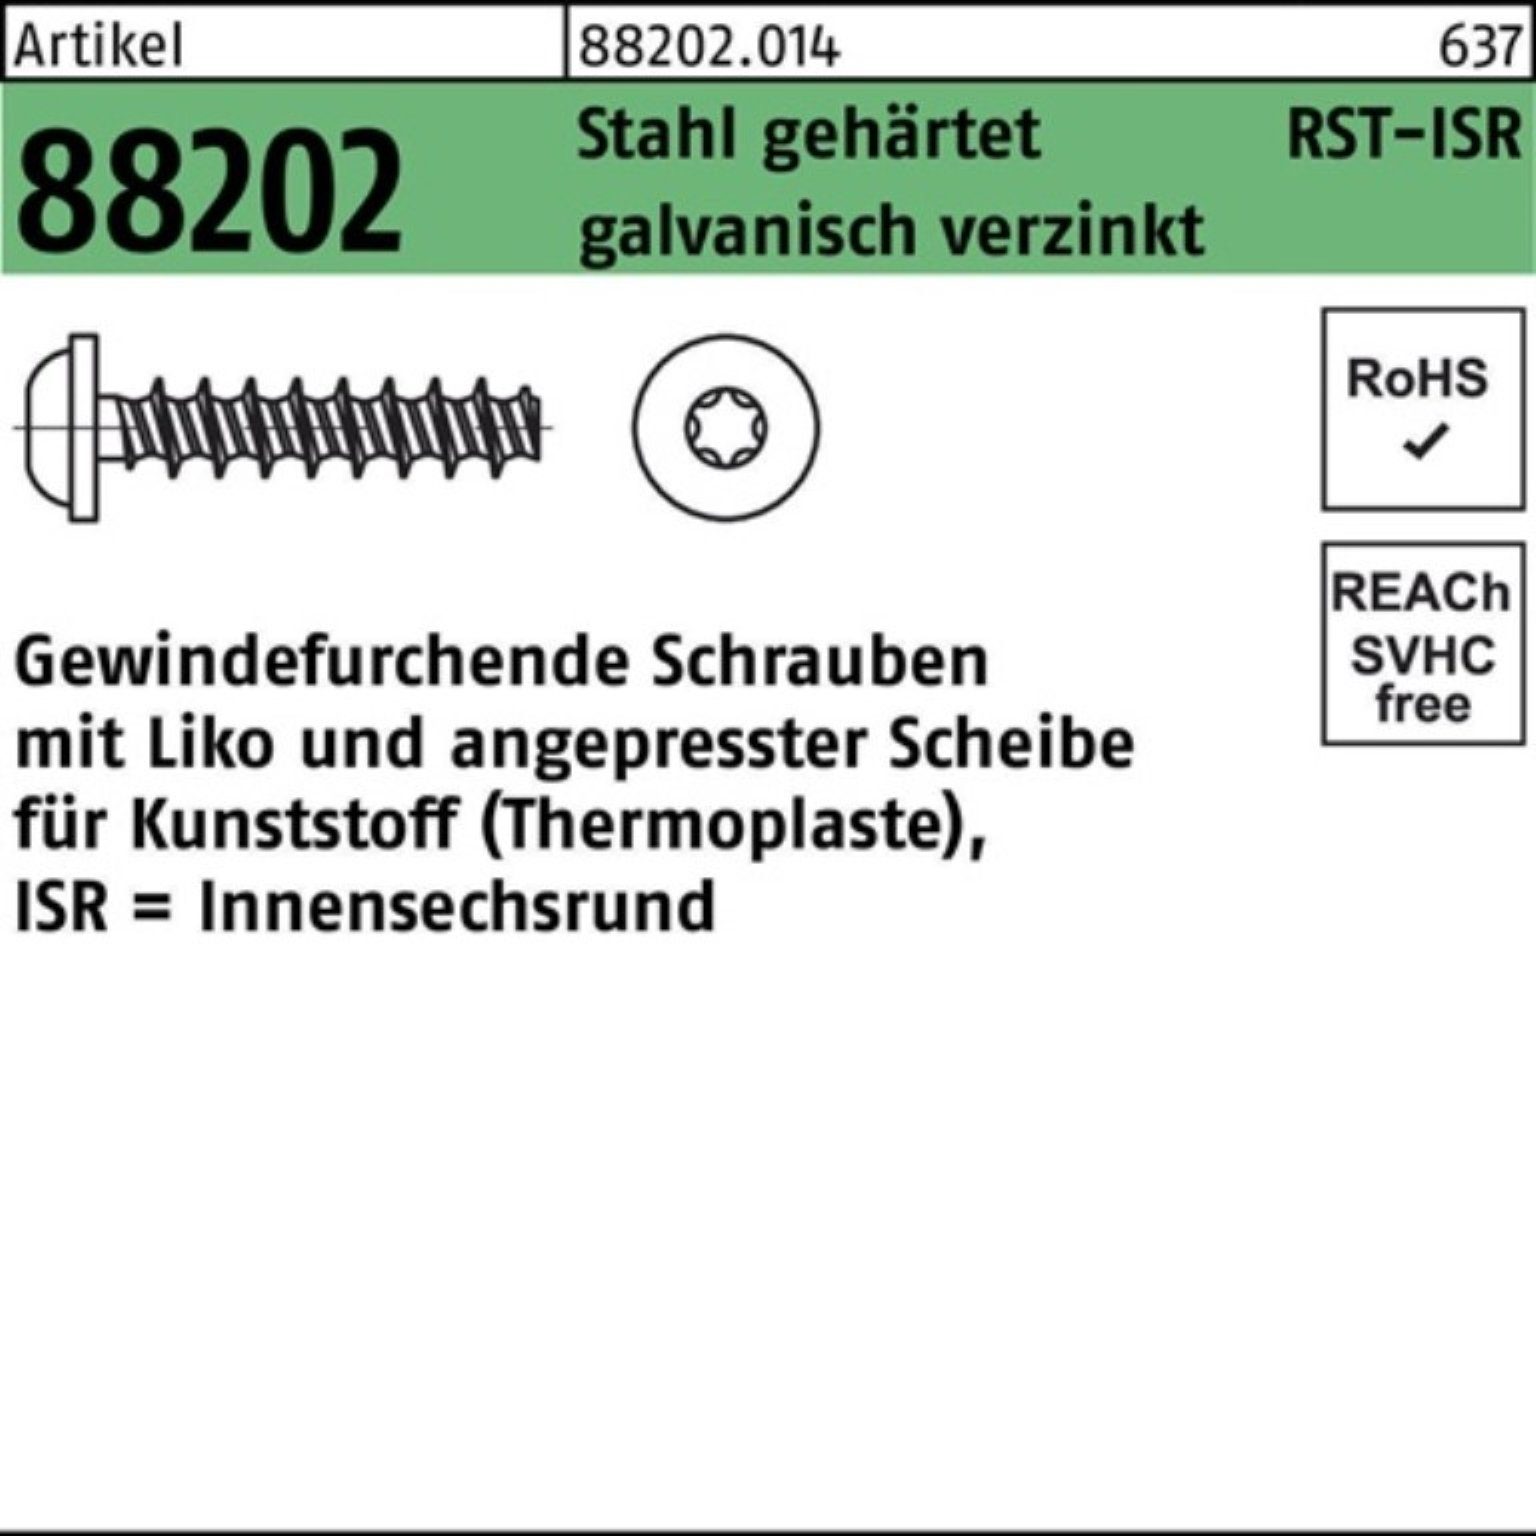 Gewindeschraube Liko Stahl 88202 ISR 500er ge Pack Gewindefurchendeschraube 5x20-T20 R Reyher